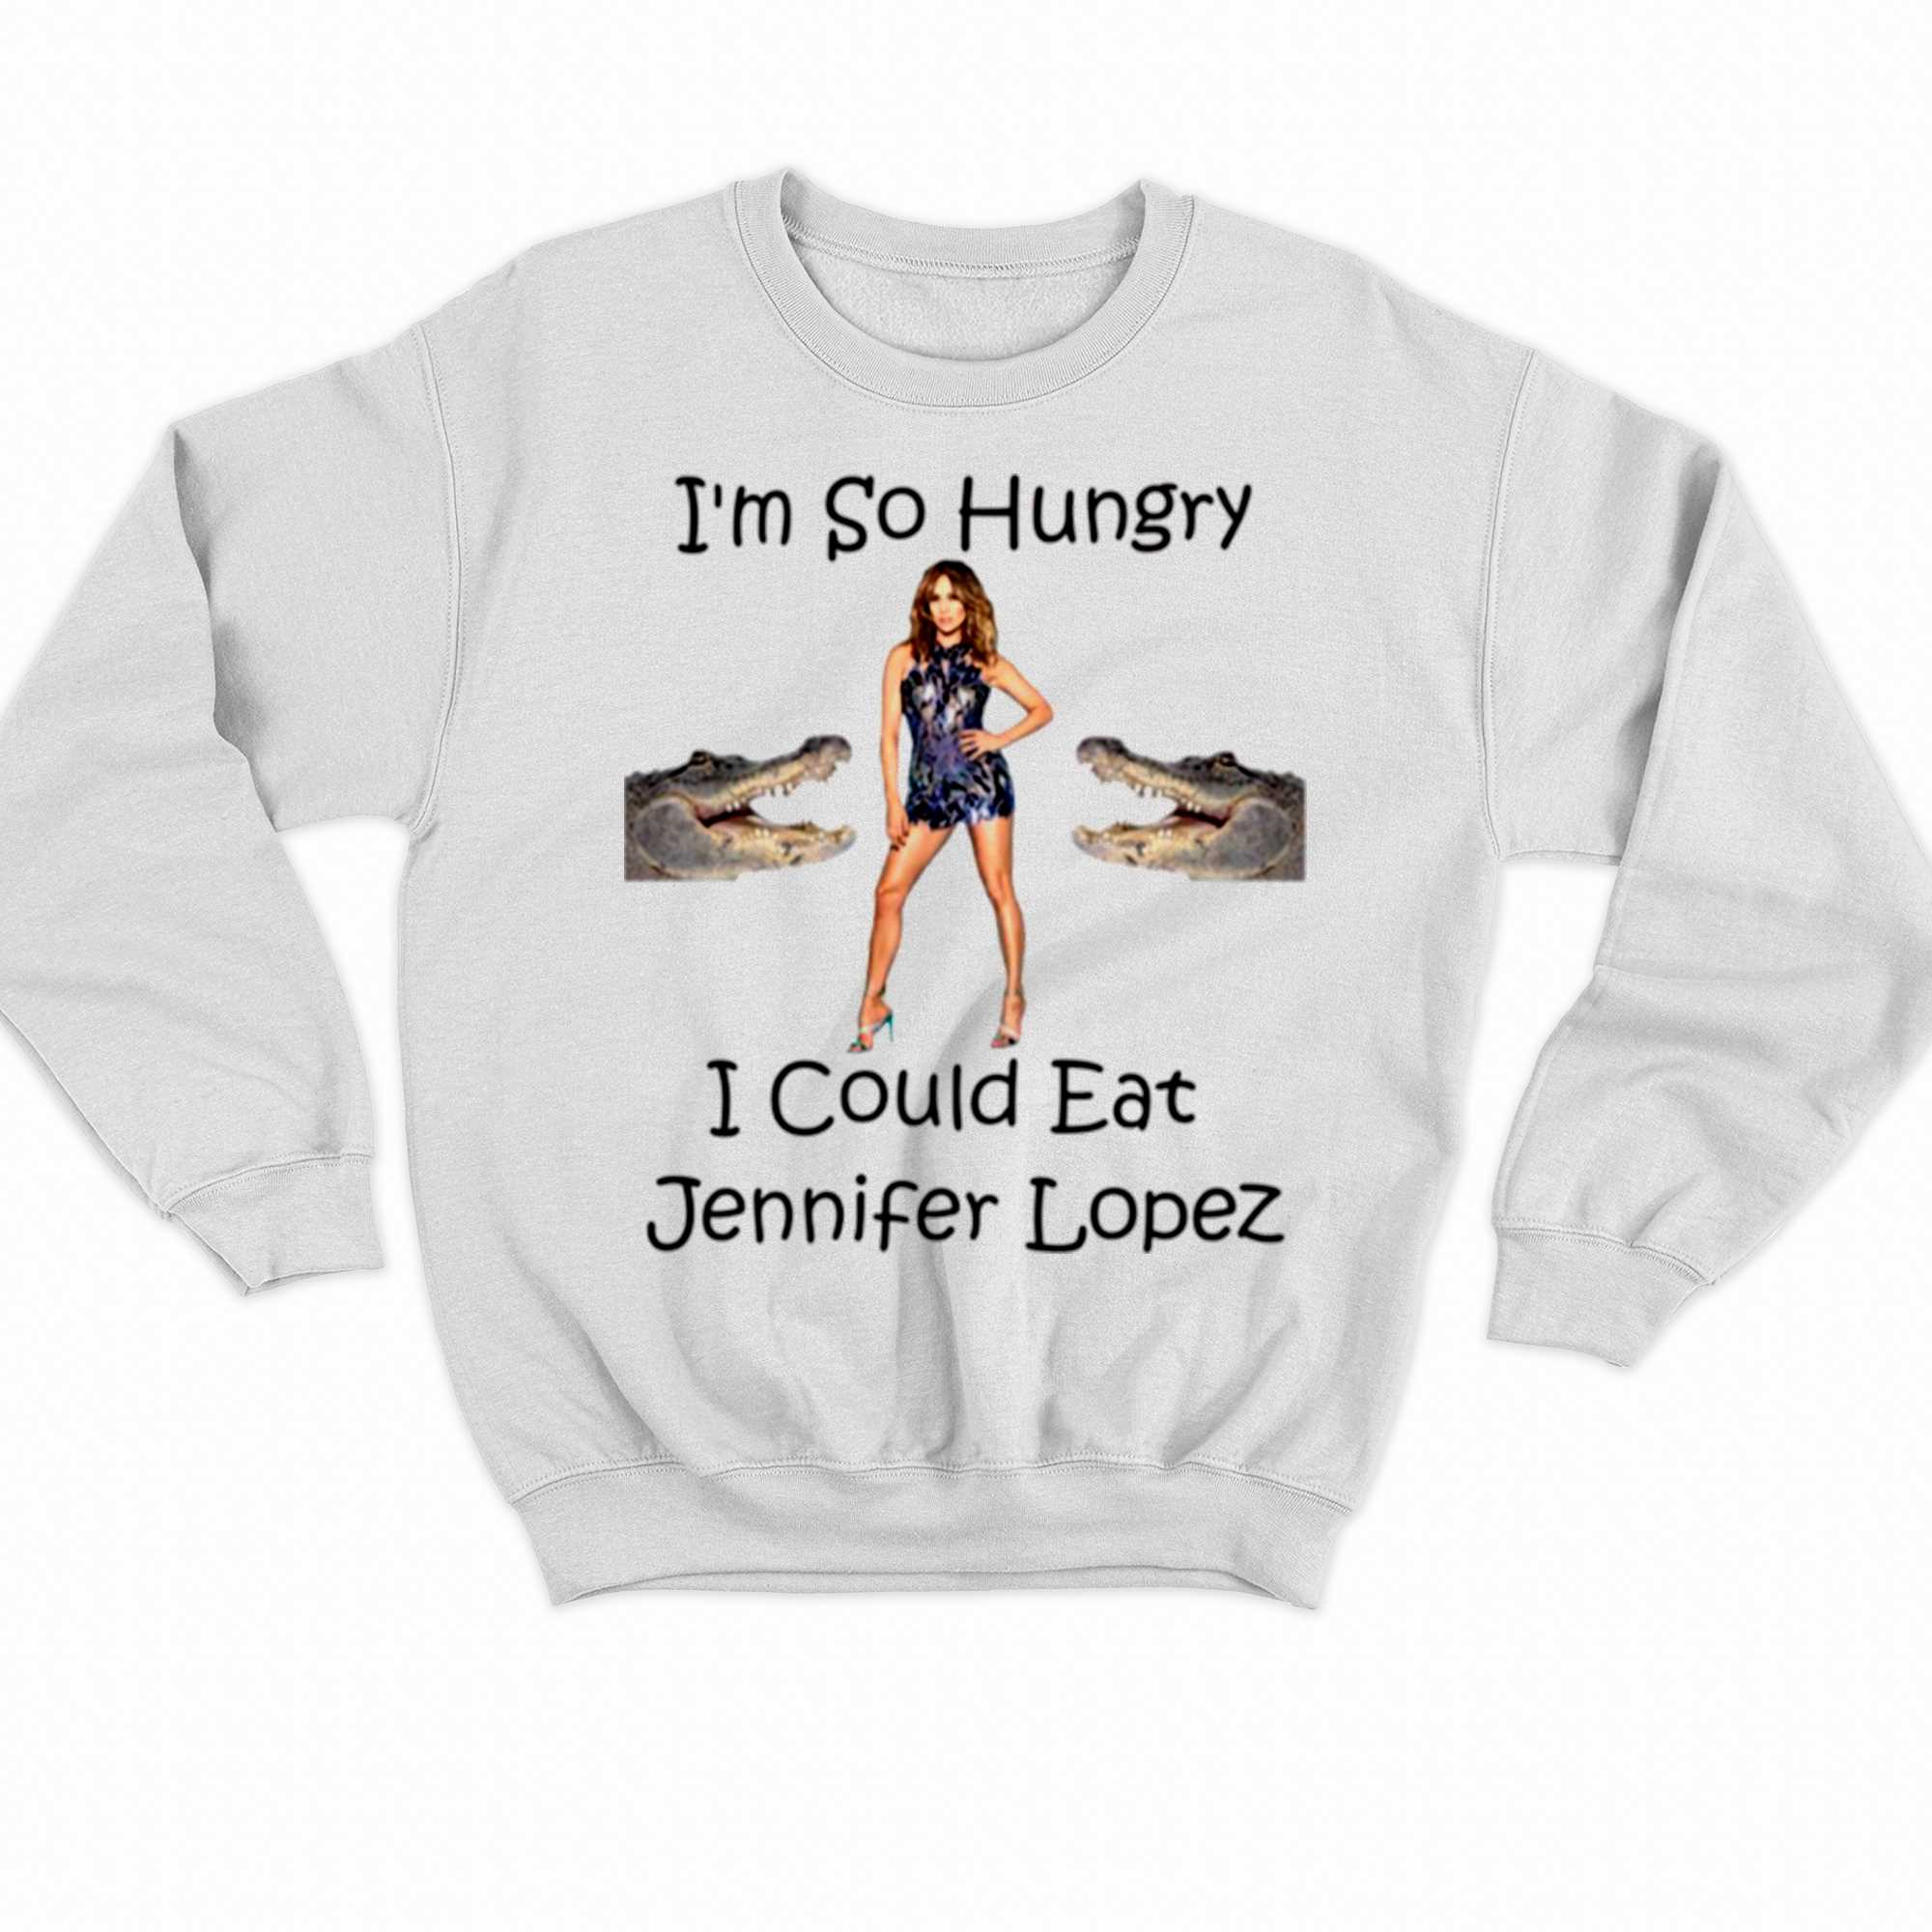 I Cound Eat Jennifer Lopez Shirt 